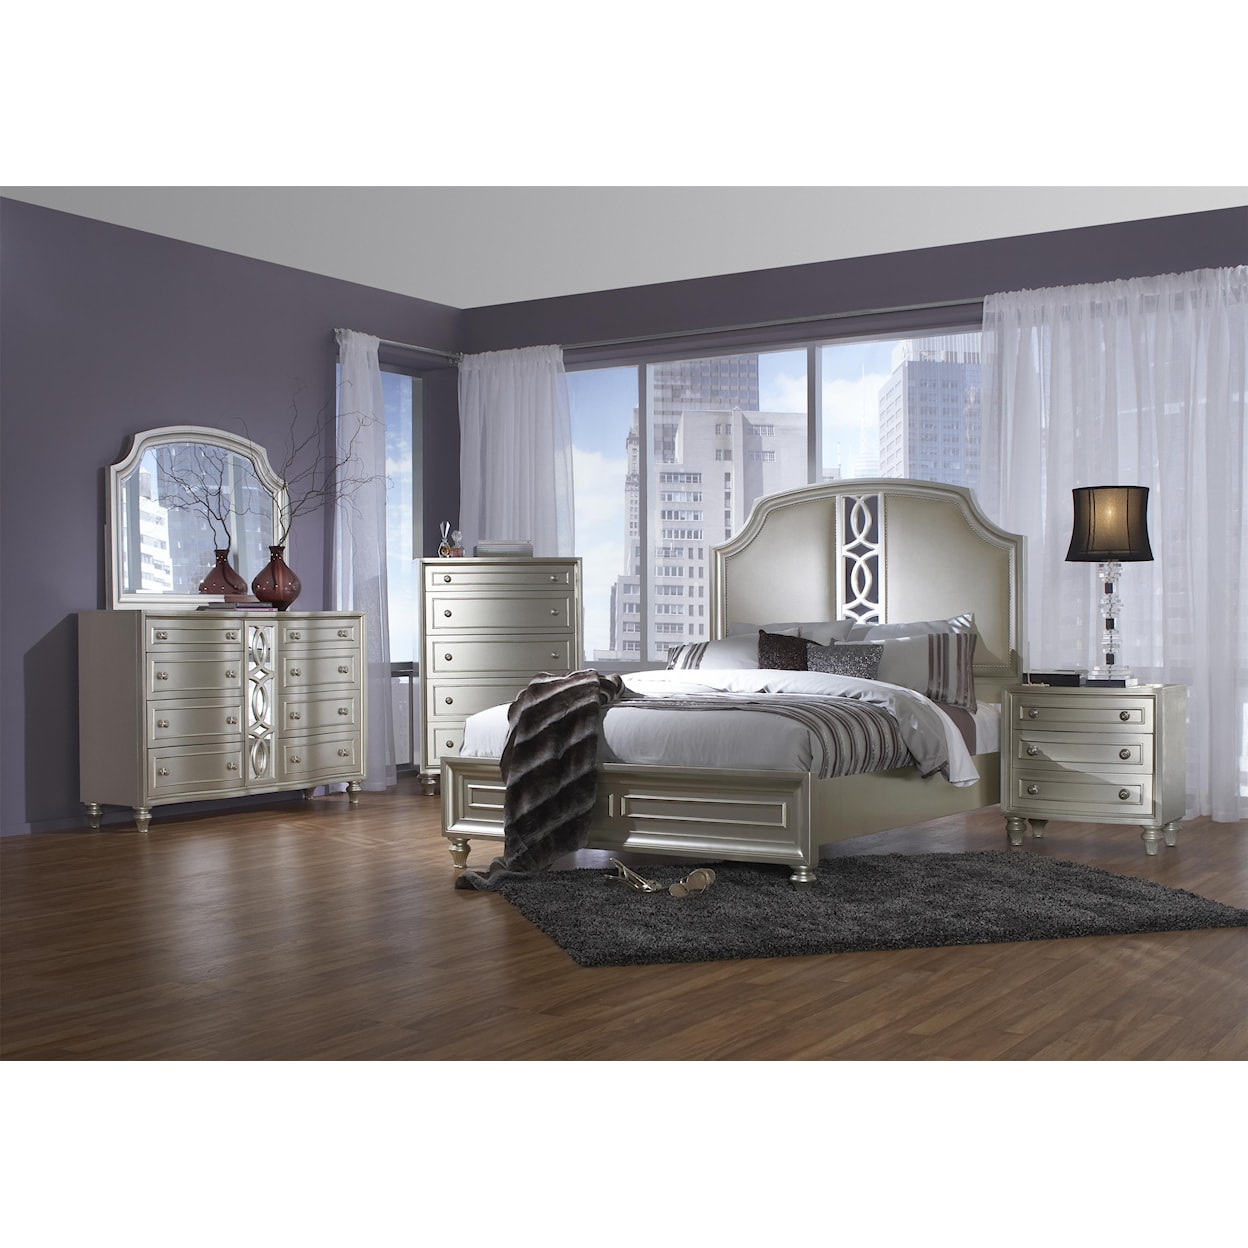 Avalon Furniture Regency Park King Bedroom Group